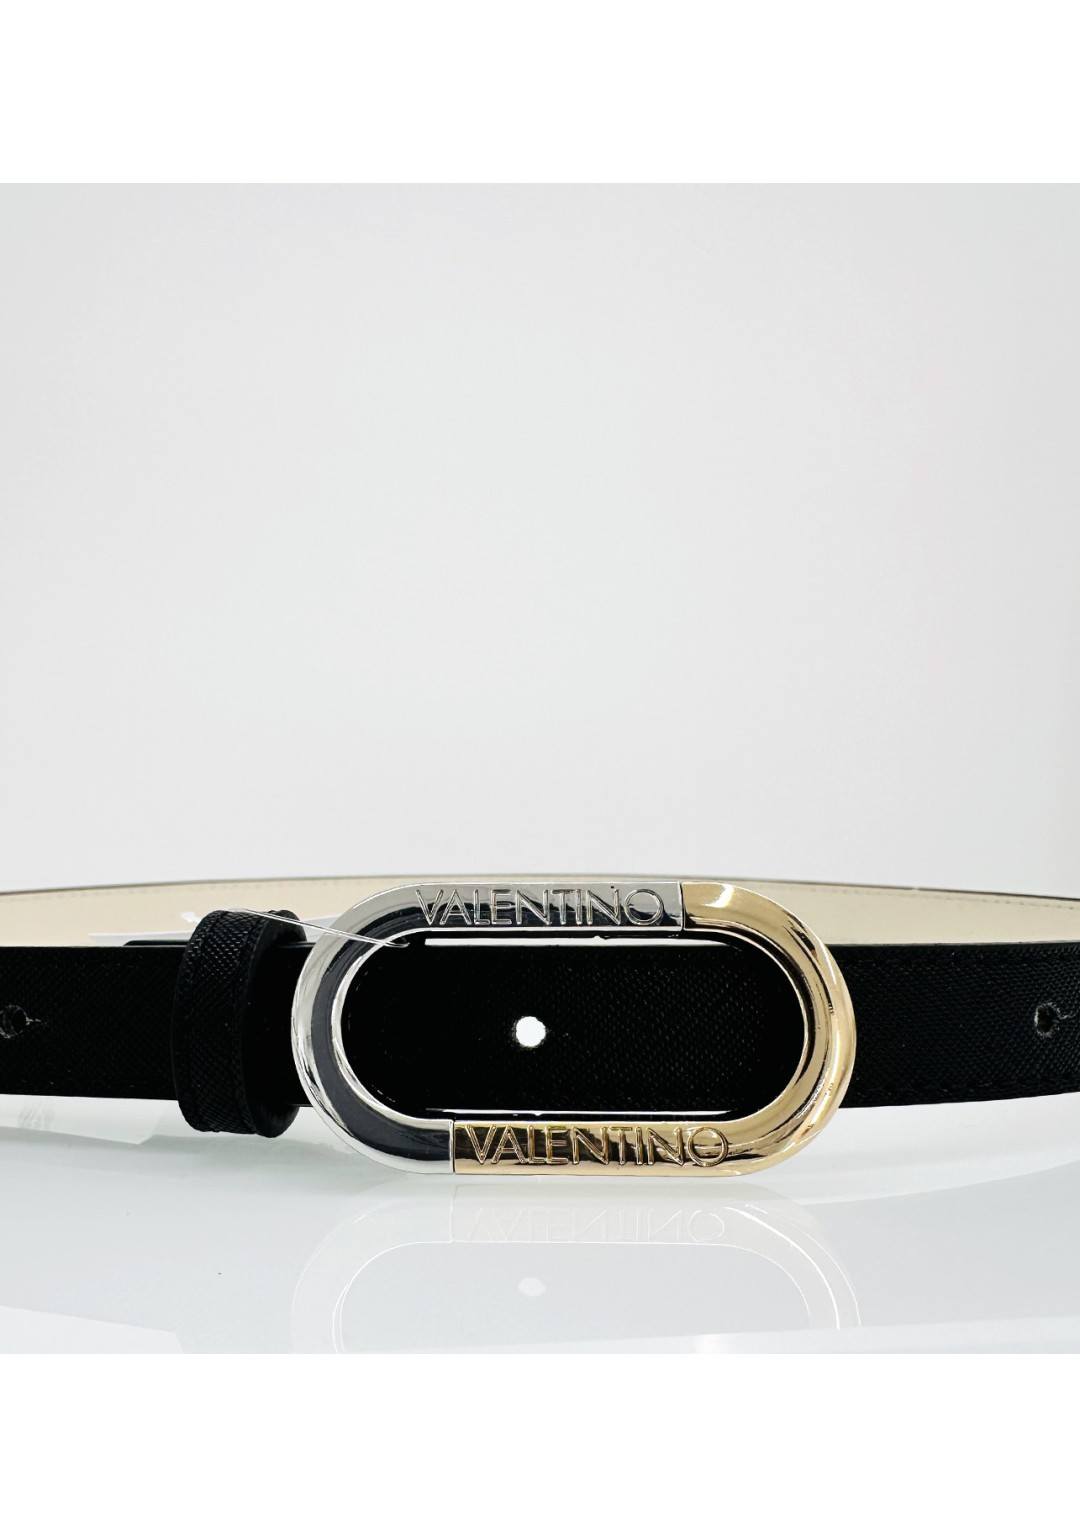 Valentino - Cintura Sottile - Donna - BERCY M56